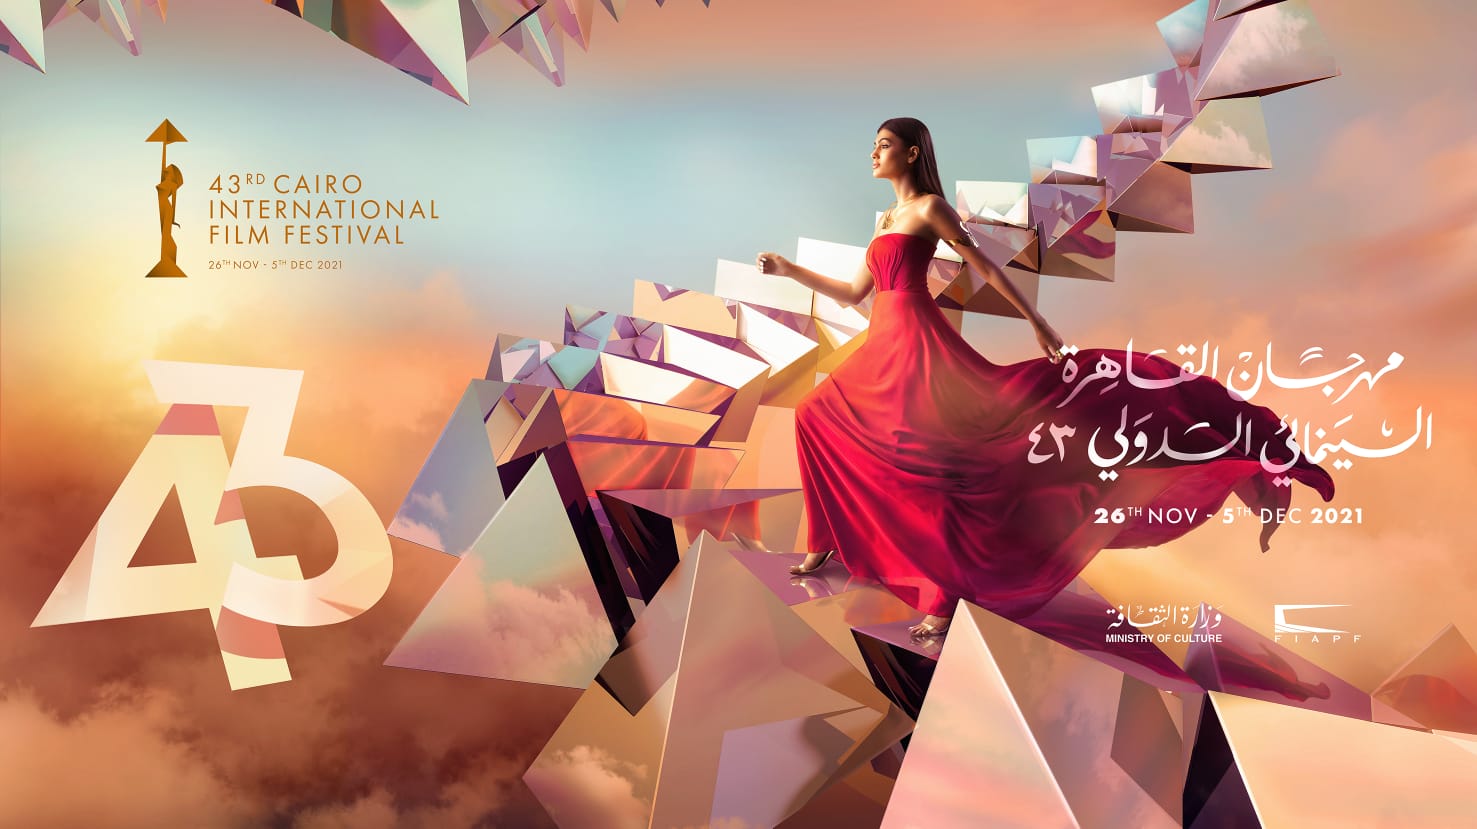 أويما 20 - Uima20 | مهرجان القاهرة السينمائي يكشف عن بوستر دورته الـ 43